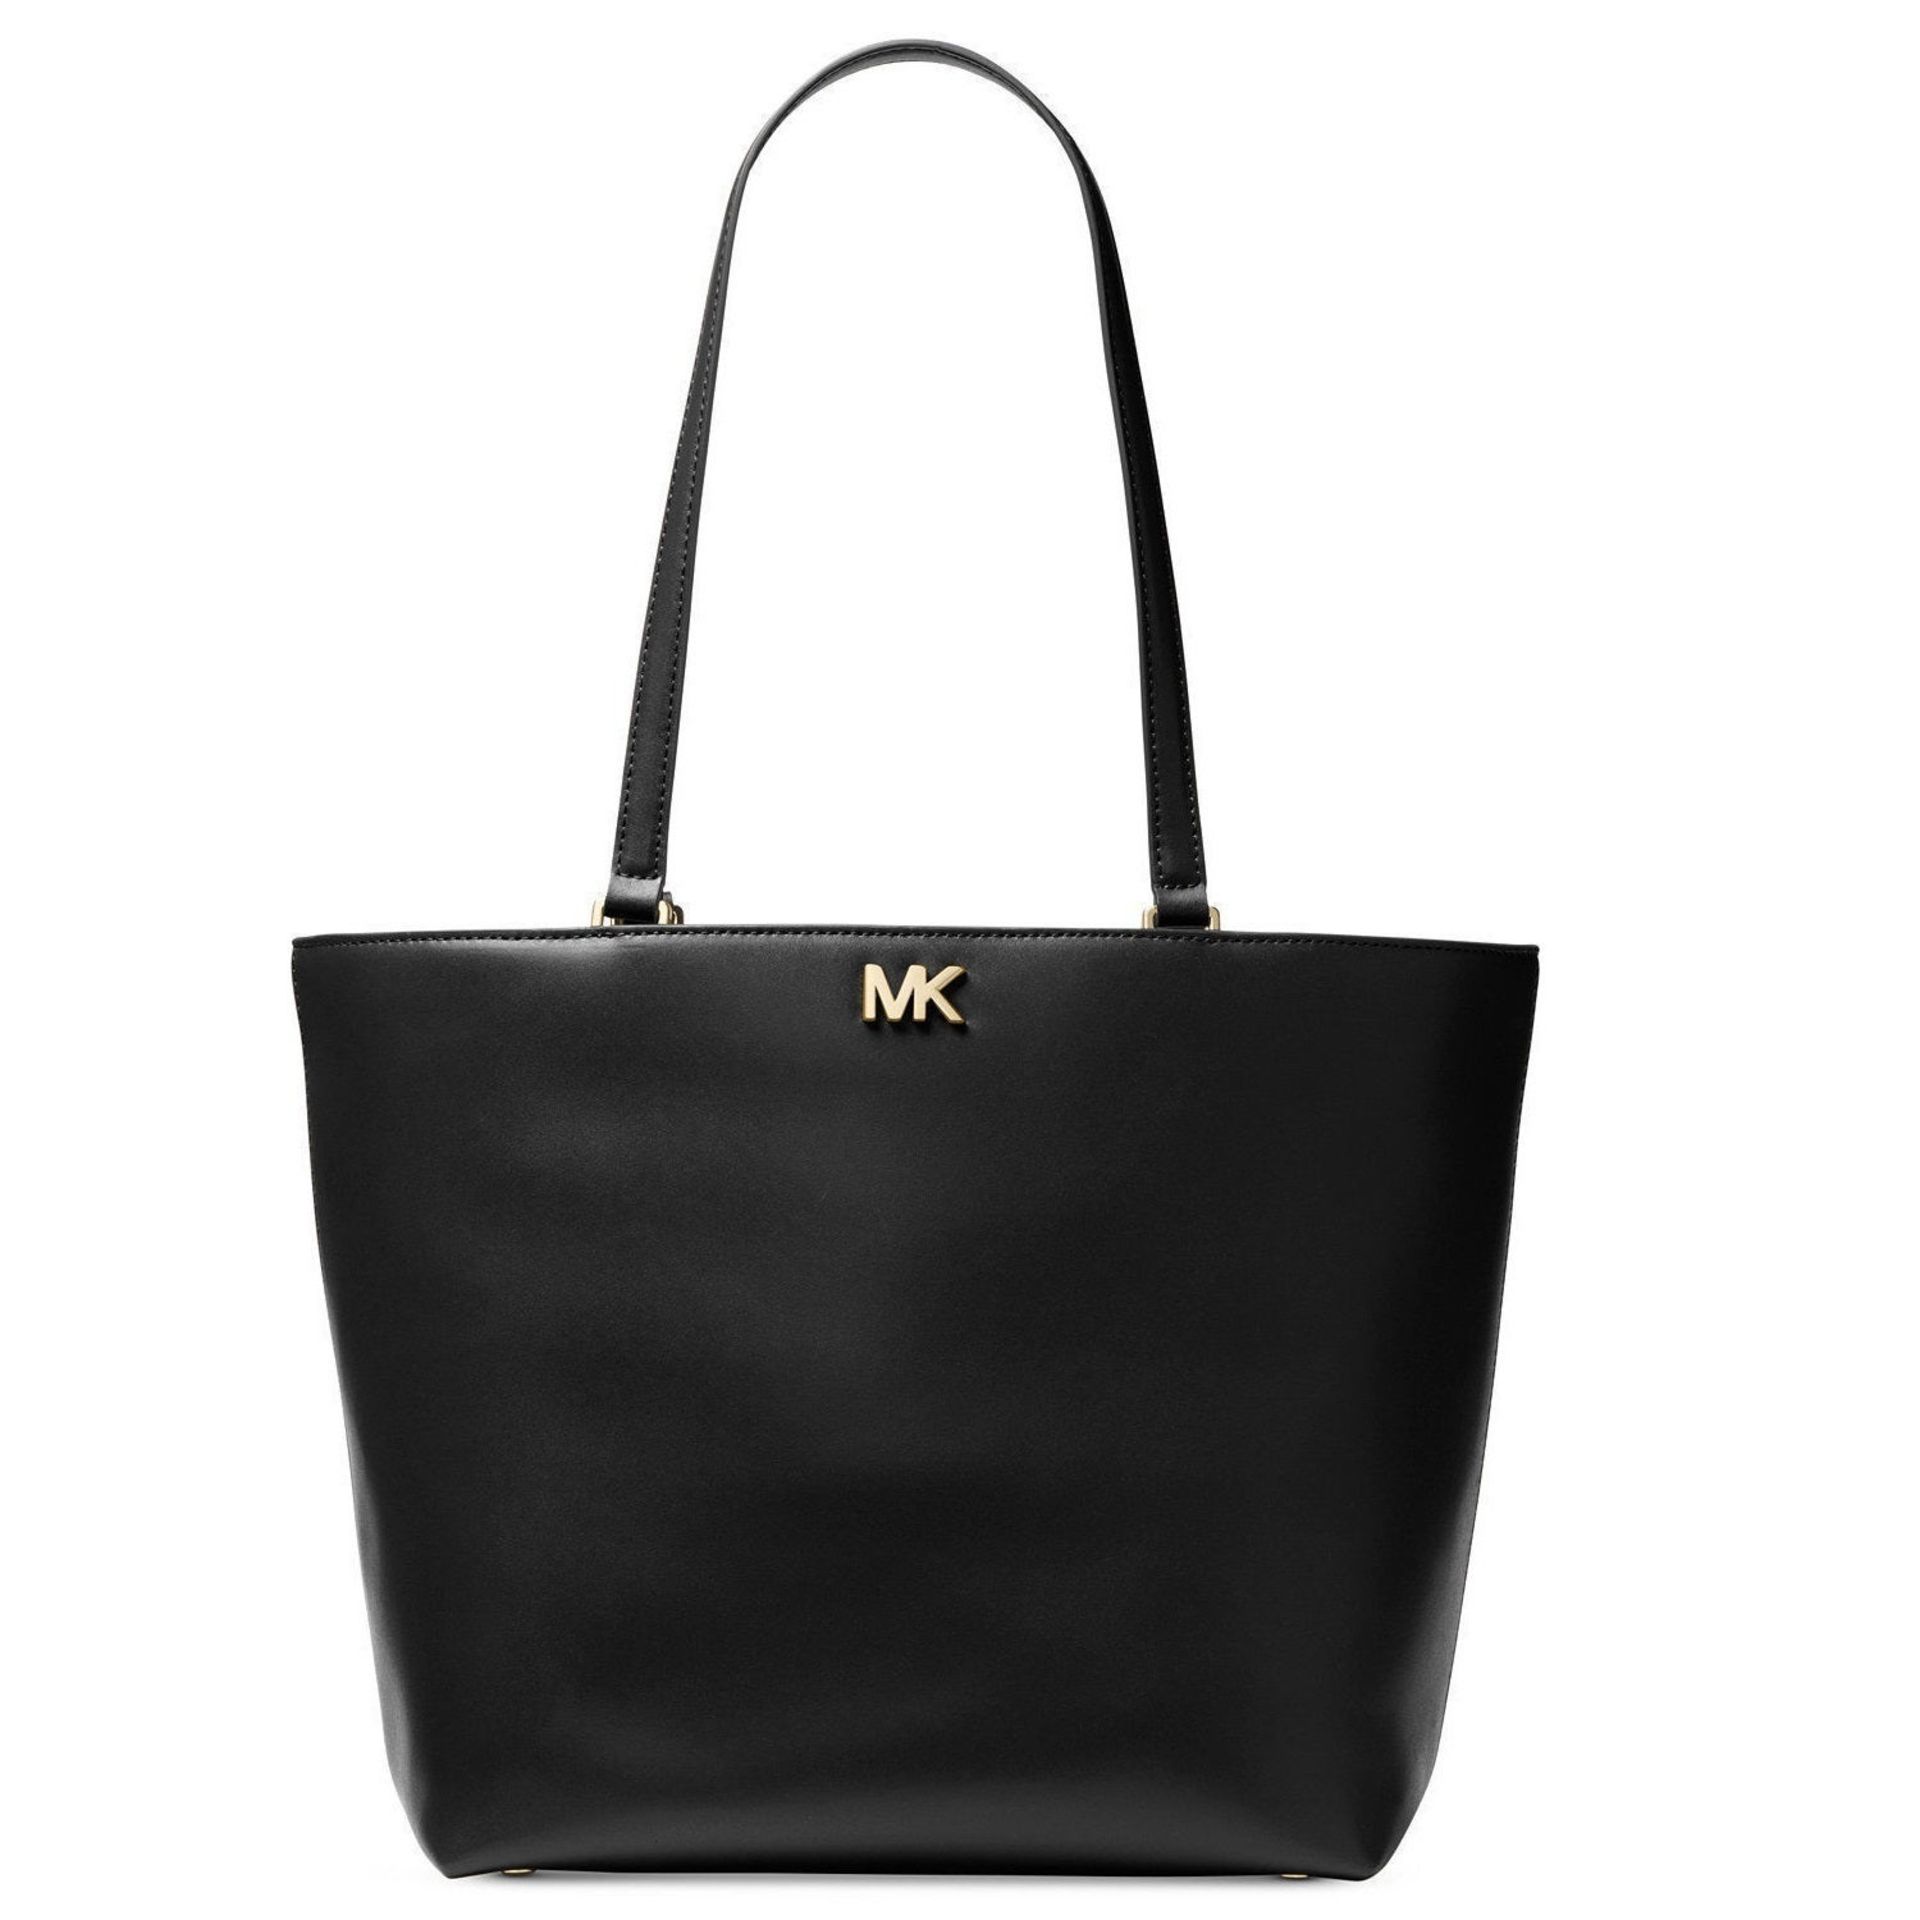 Michael Kors Handbag - Image 3 of 4